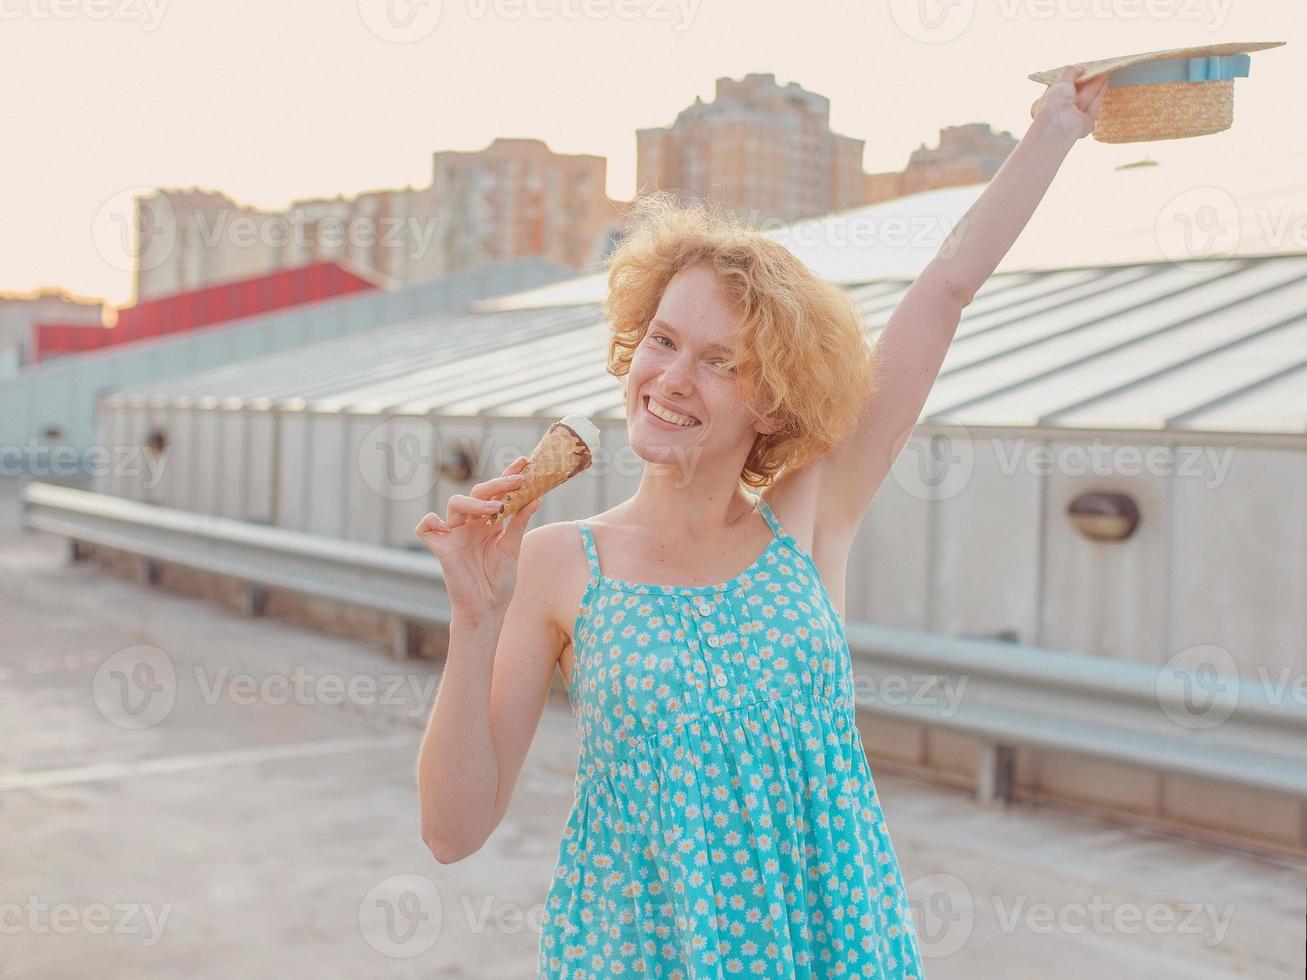 joven feliz alegre pelirroja rizada con sombrero de paja, vestido azul comiendo helado en el techo del rascacielos. diversión, estilo de vida, urbano, moderno, techo, ciudad, verano, moda, concepto de juventud foto